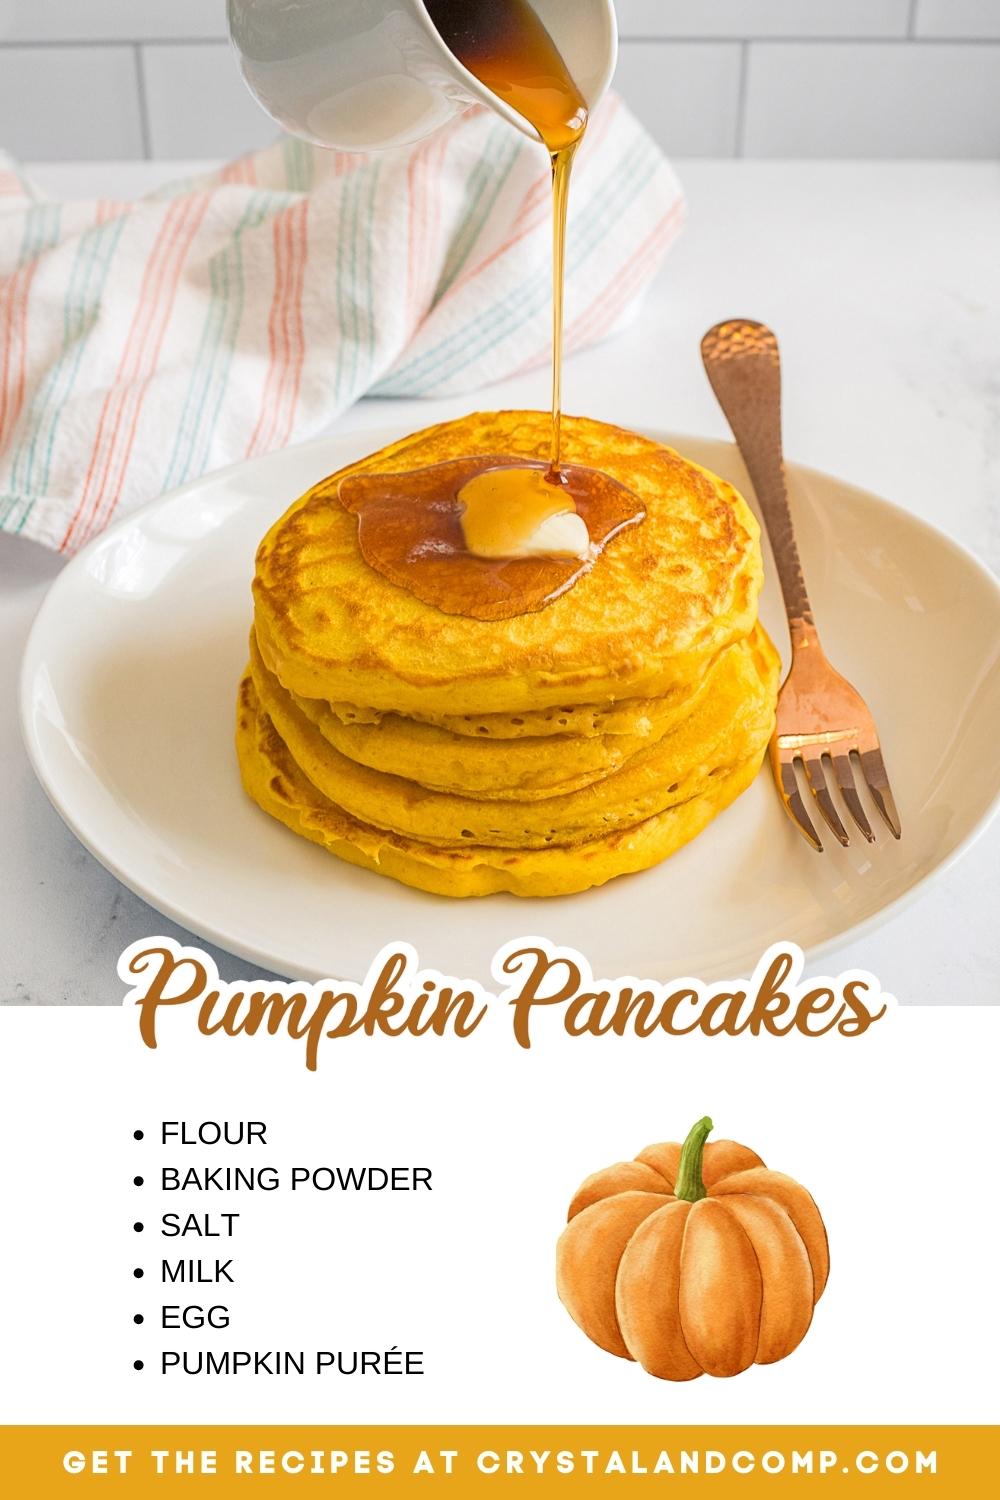 pumpkin pancakes ingredients list